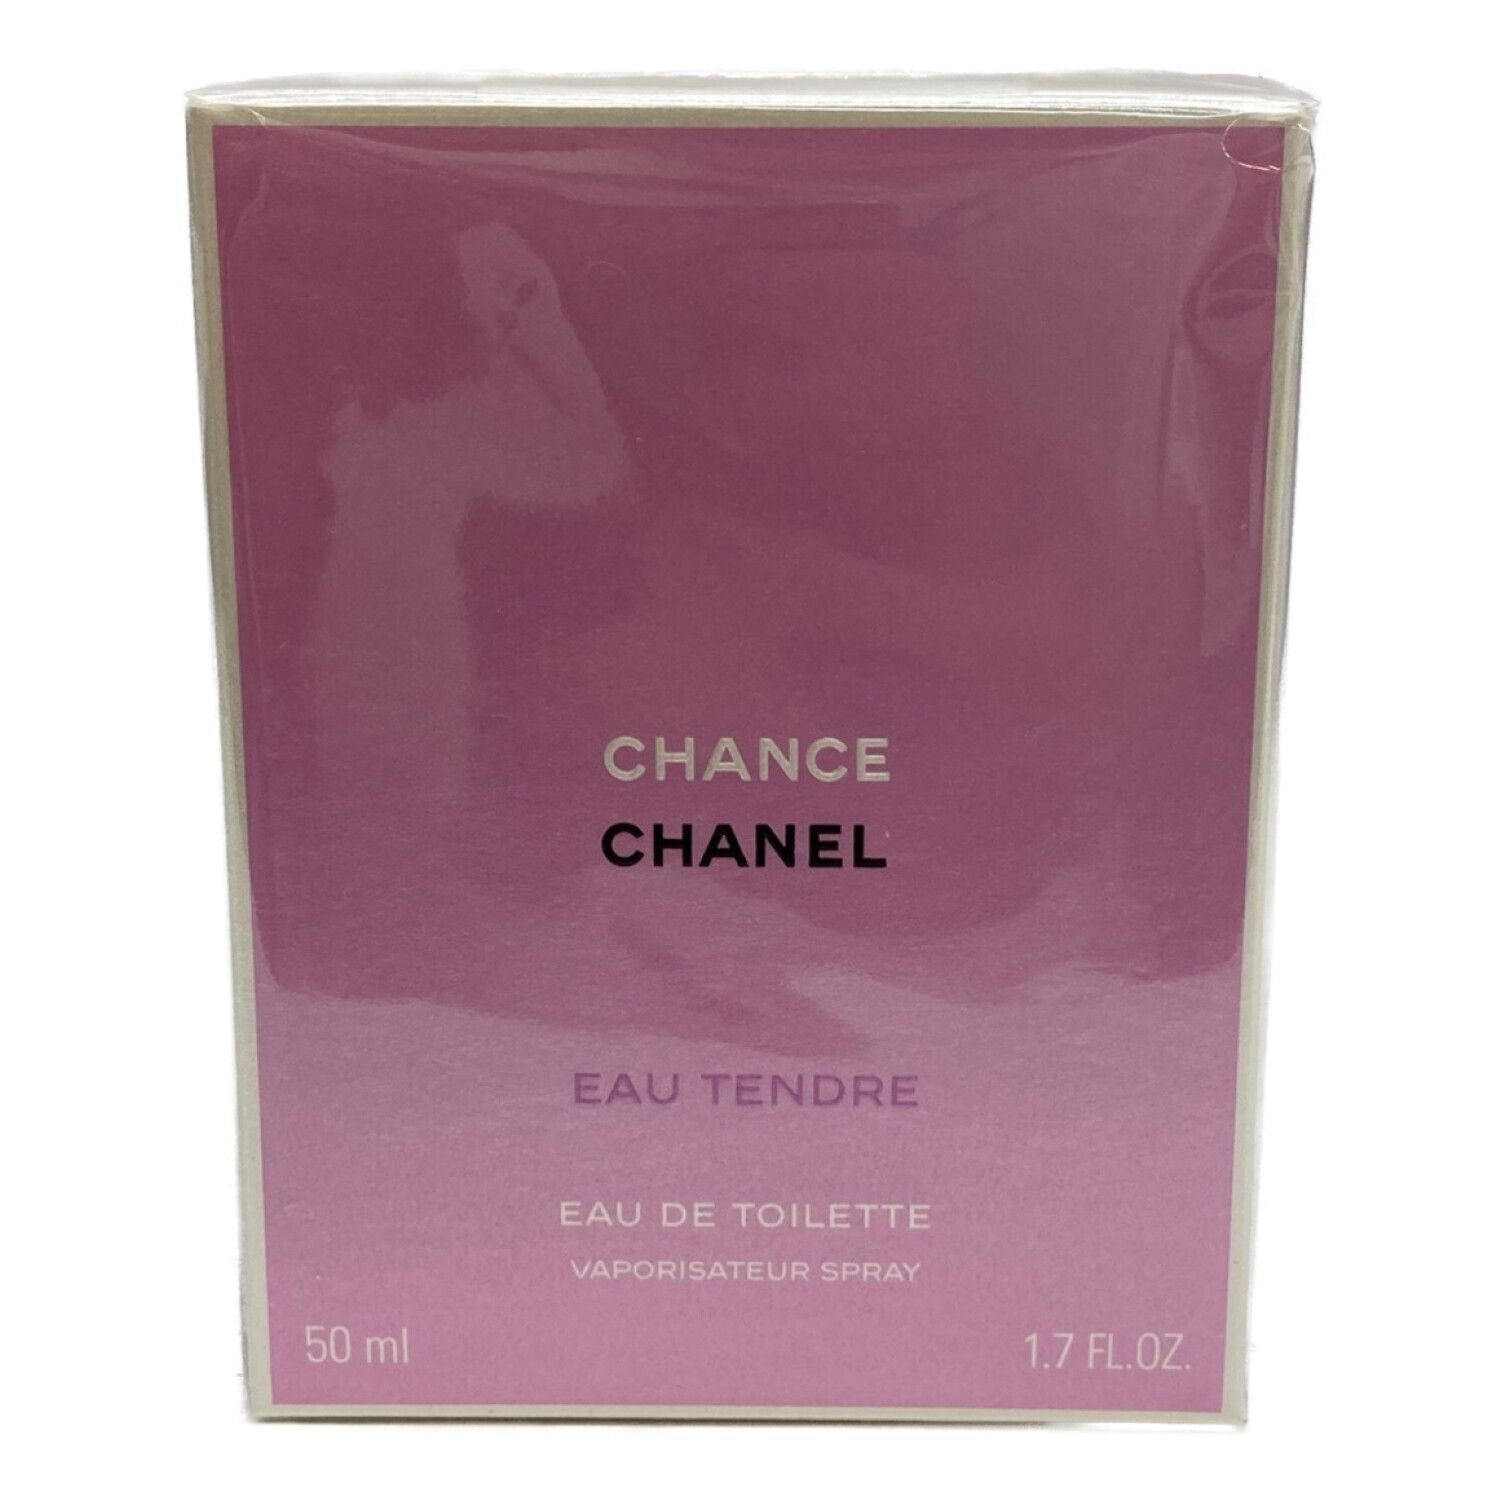 CHANEL (シャネル) 香水 チャンス オー タンドゥル オードゥ